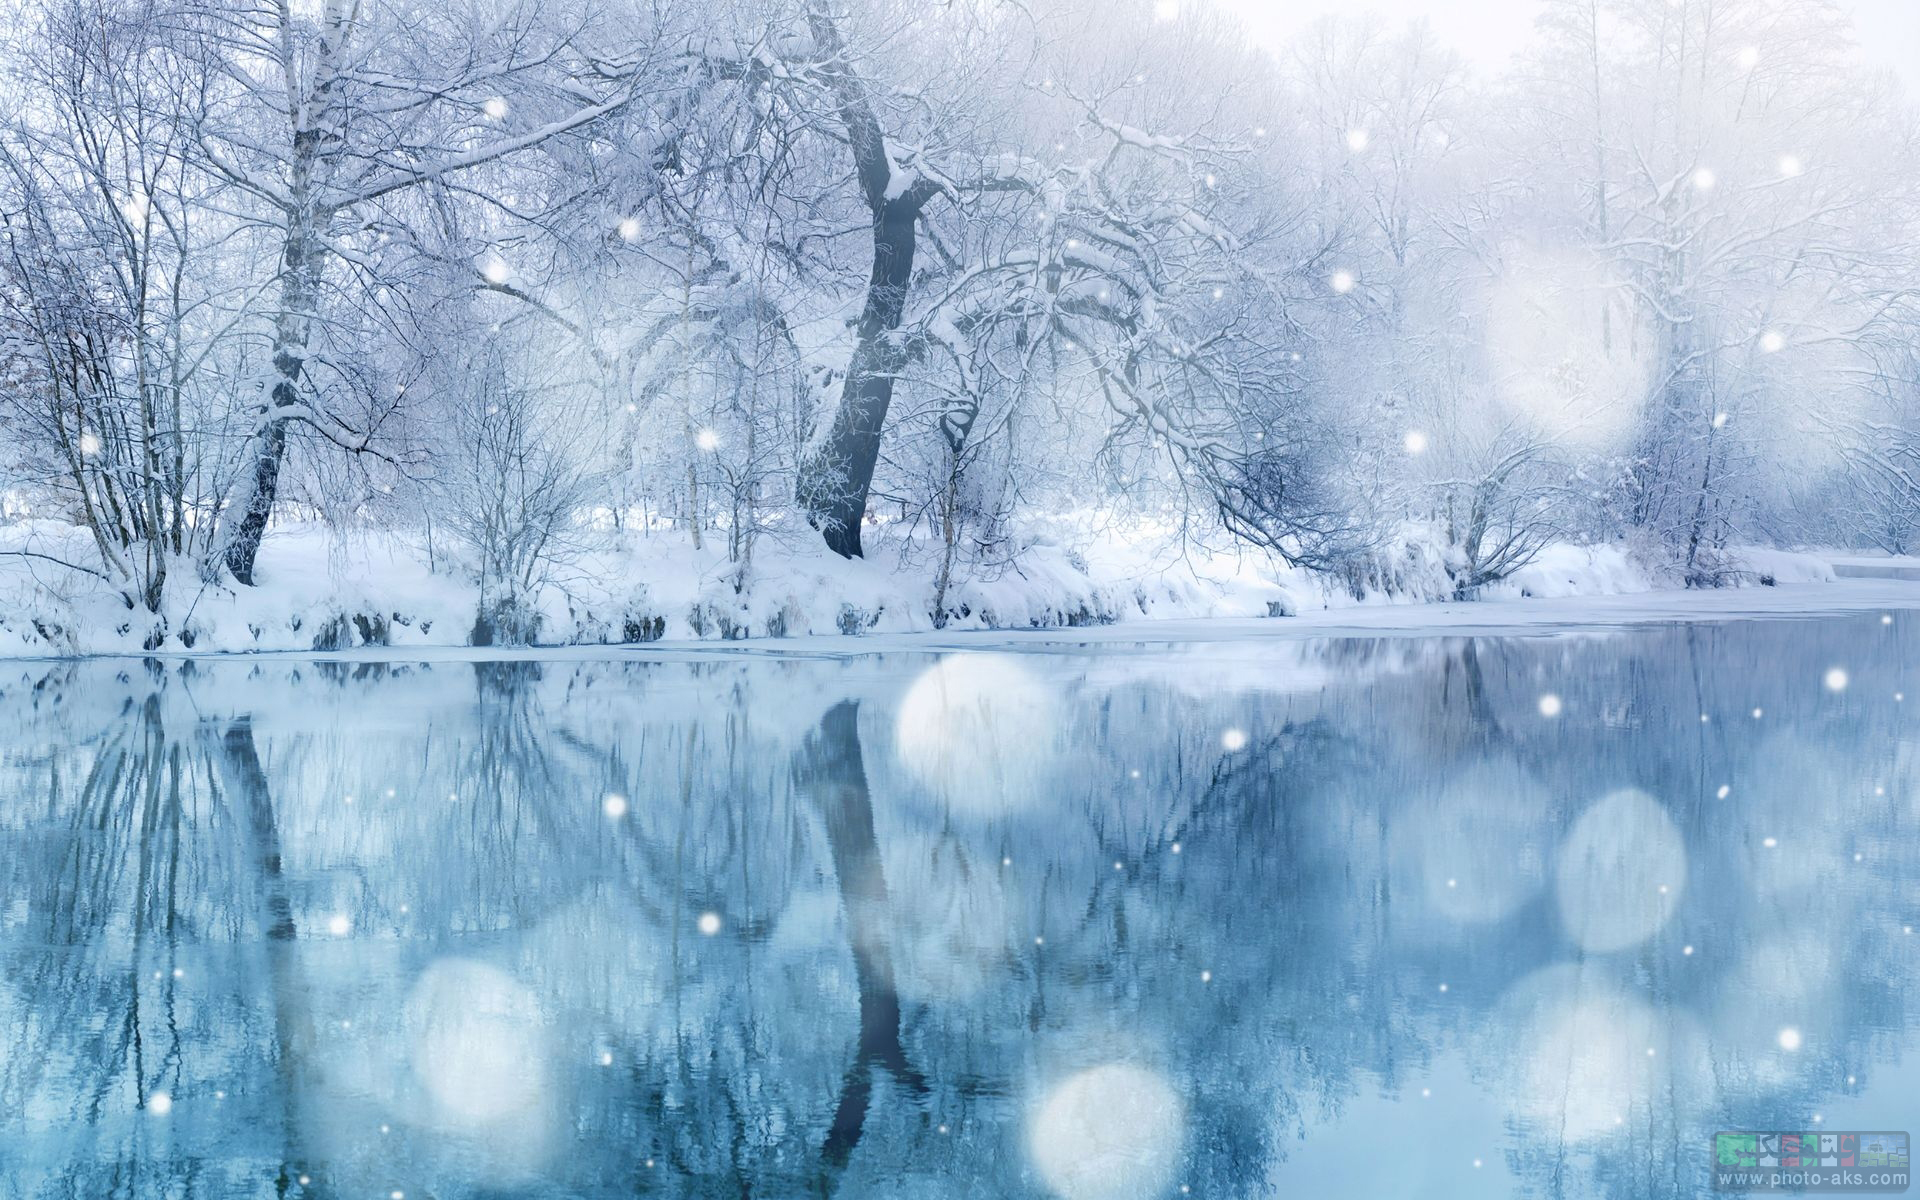 عکس های طبیعت در فصل زمستان
